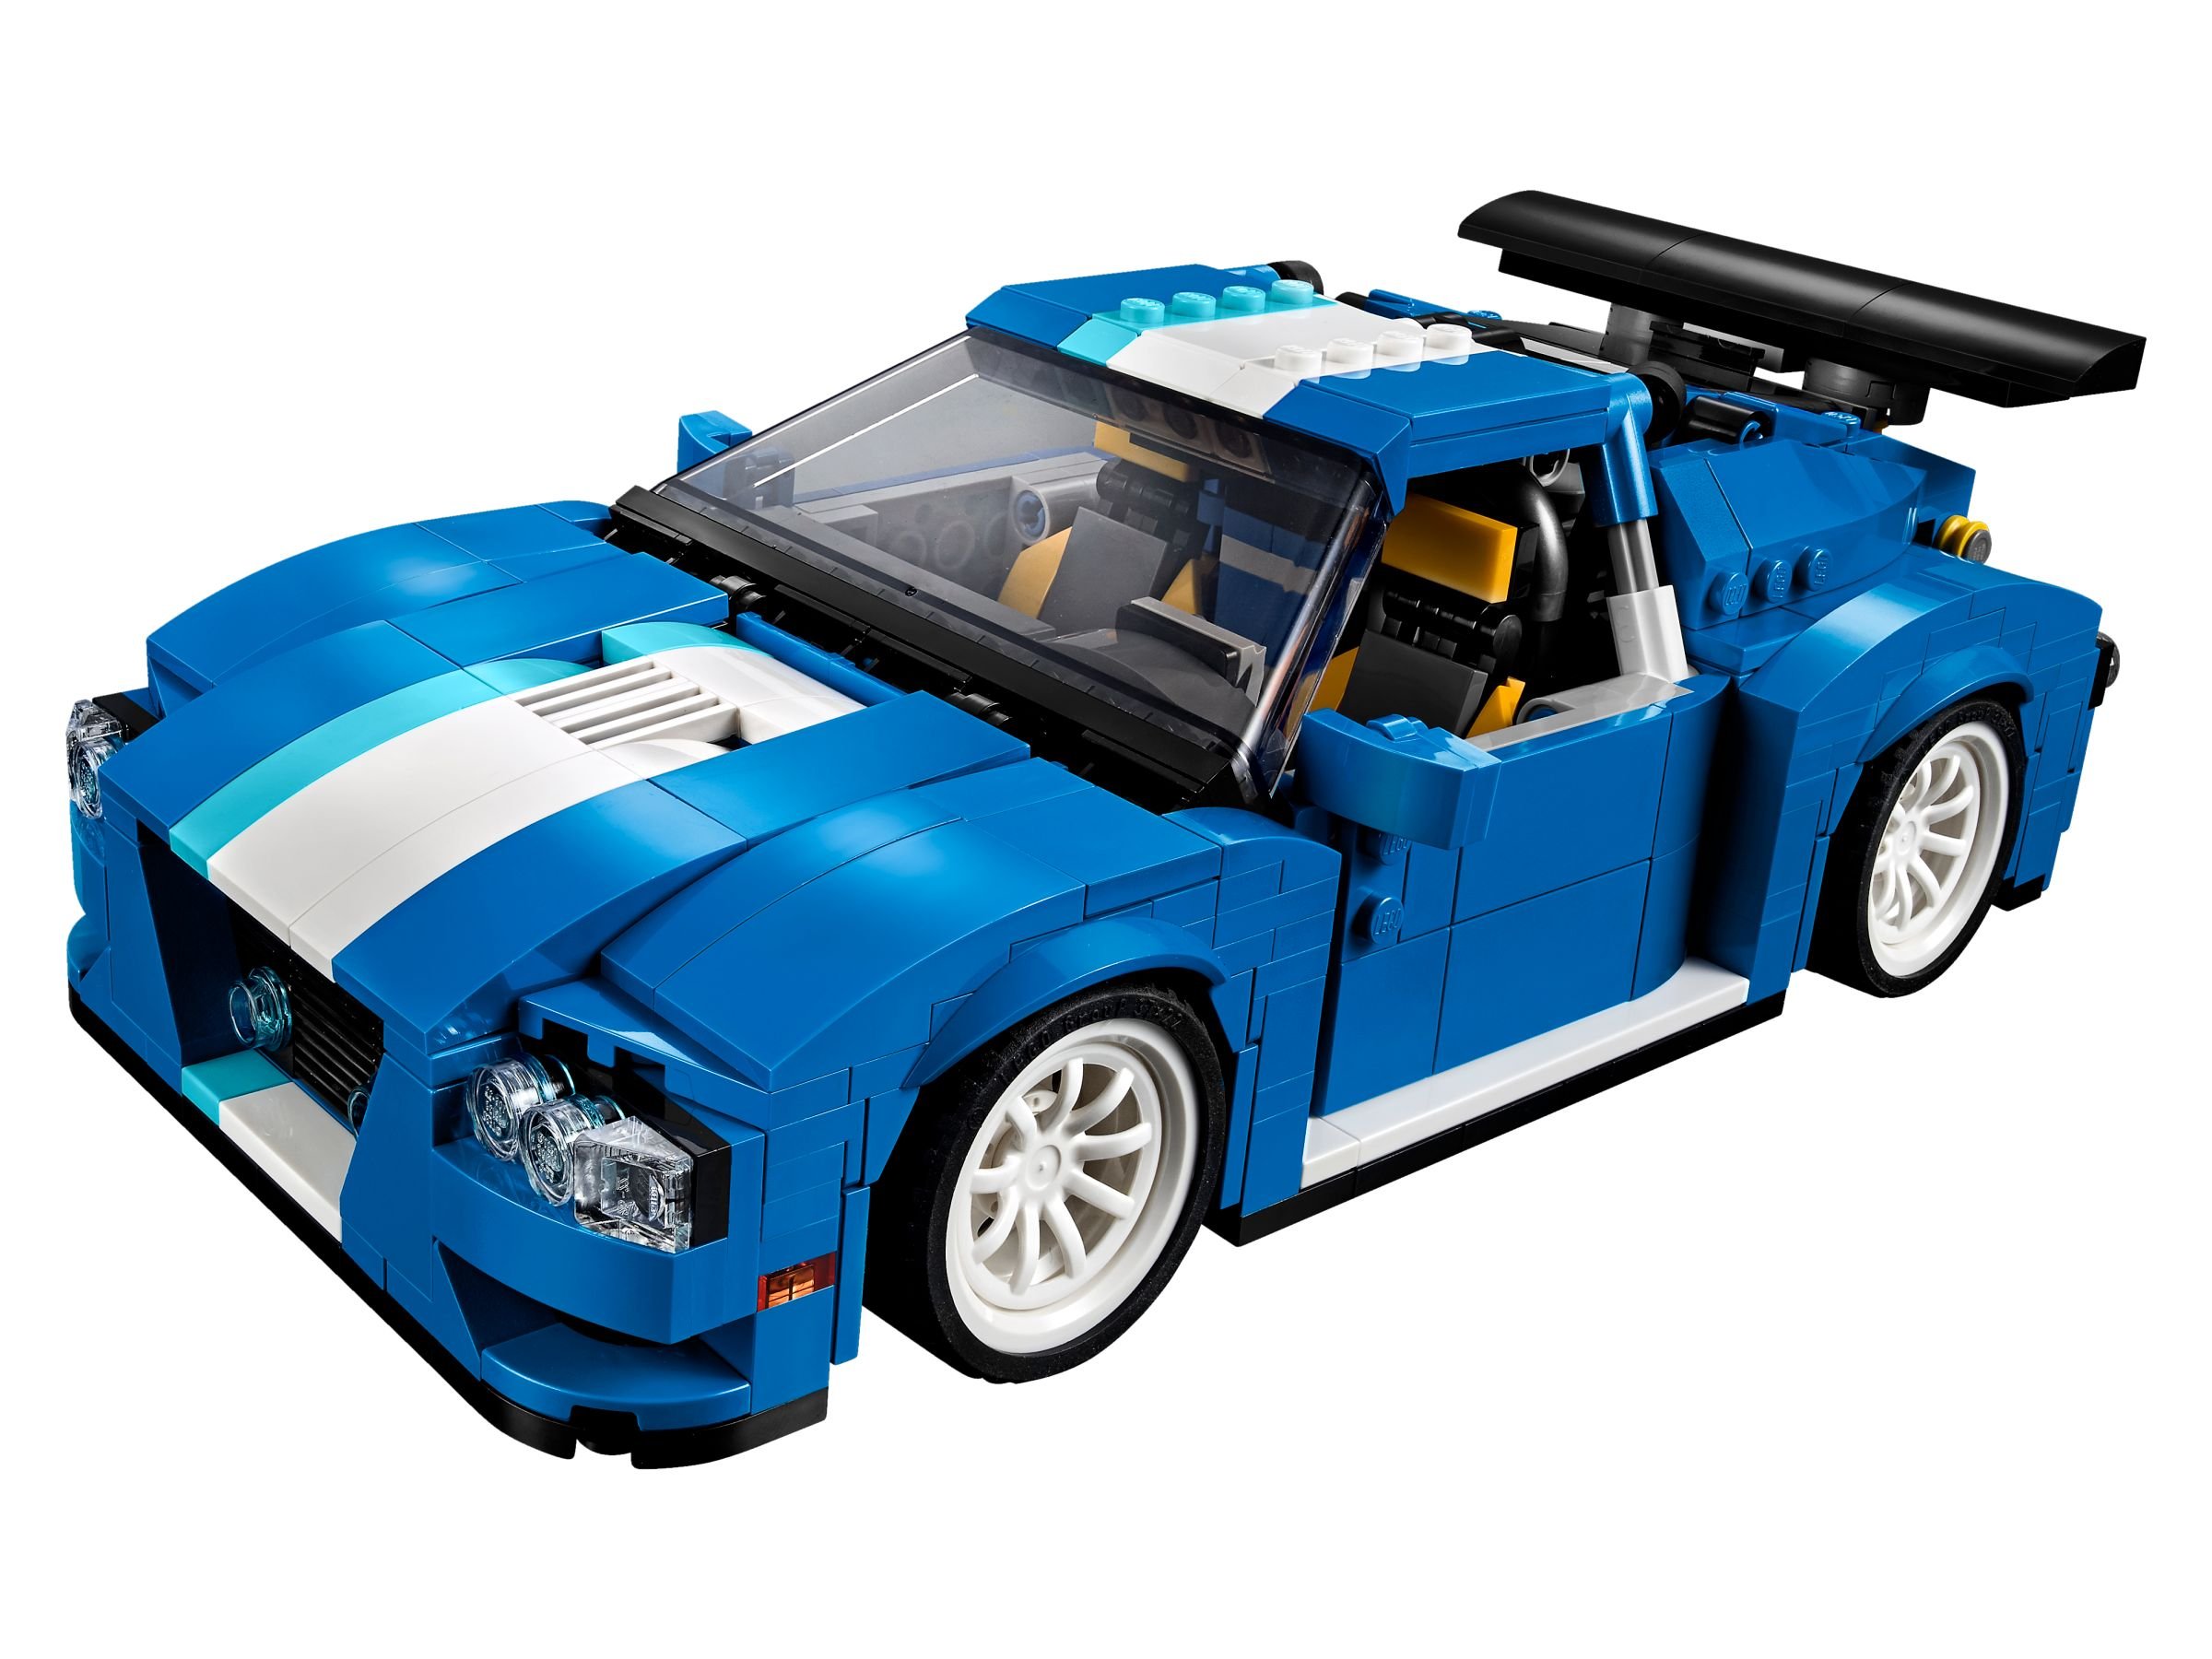 LEGO Creator 31070 Turborennwagen LEGO_31070_alt2.jpg